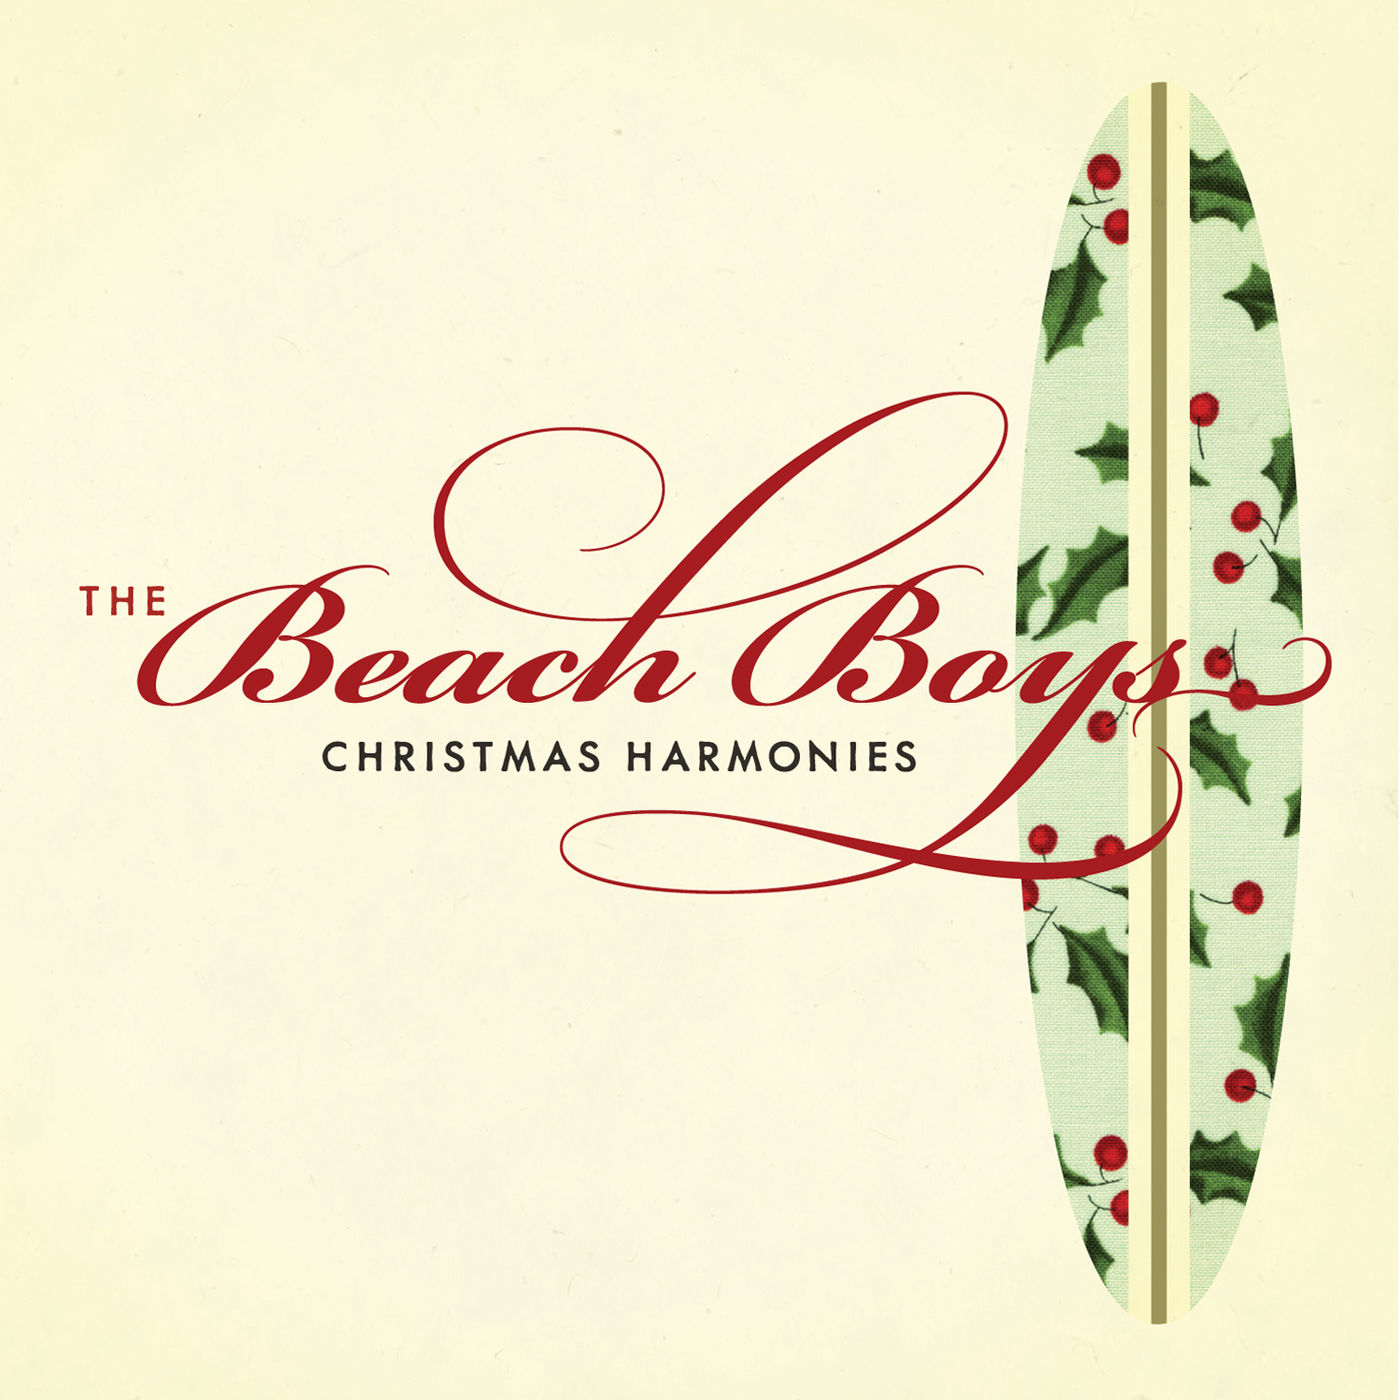 The Beach Boys – Christmas Harmonies【44.1kHz／16bit】意大利区-OppsUpro音乐帝国